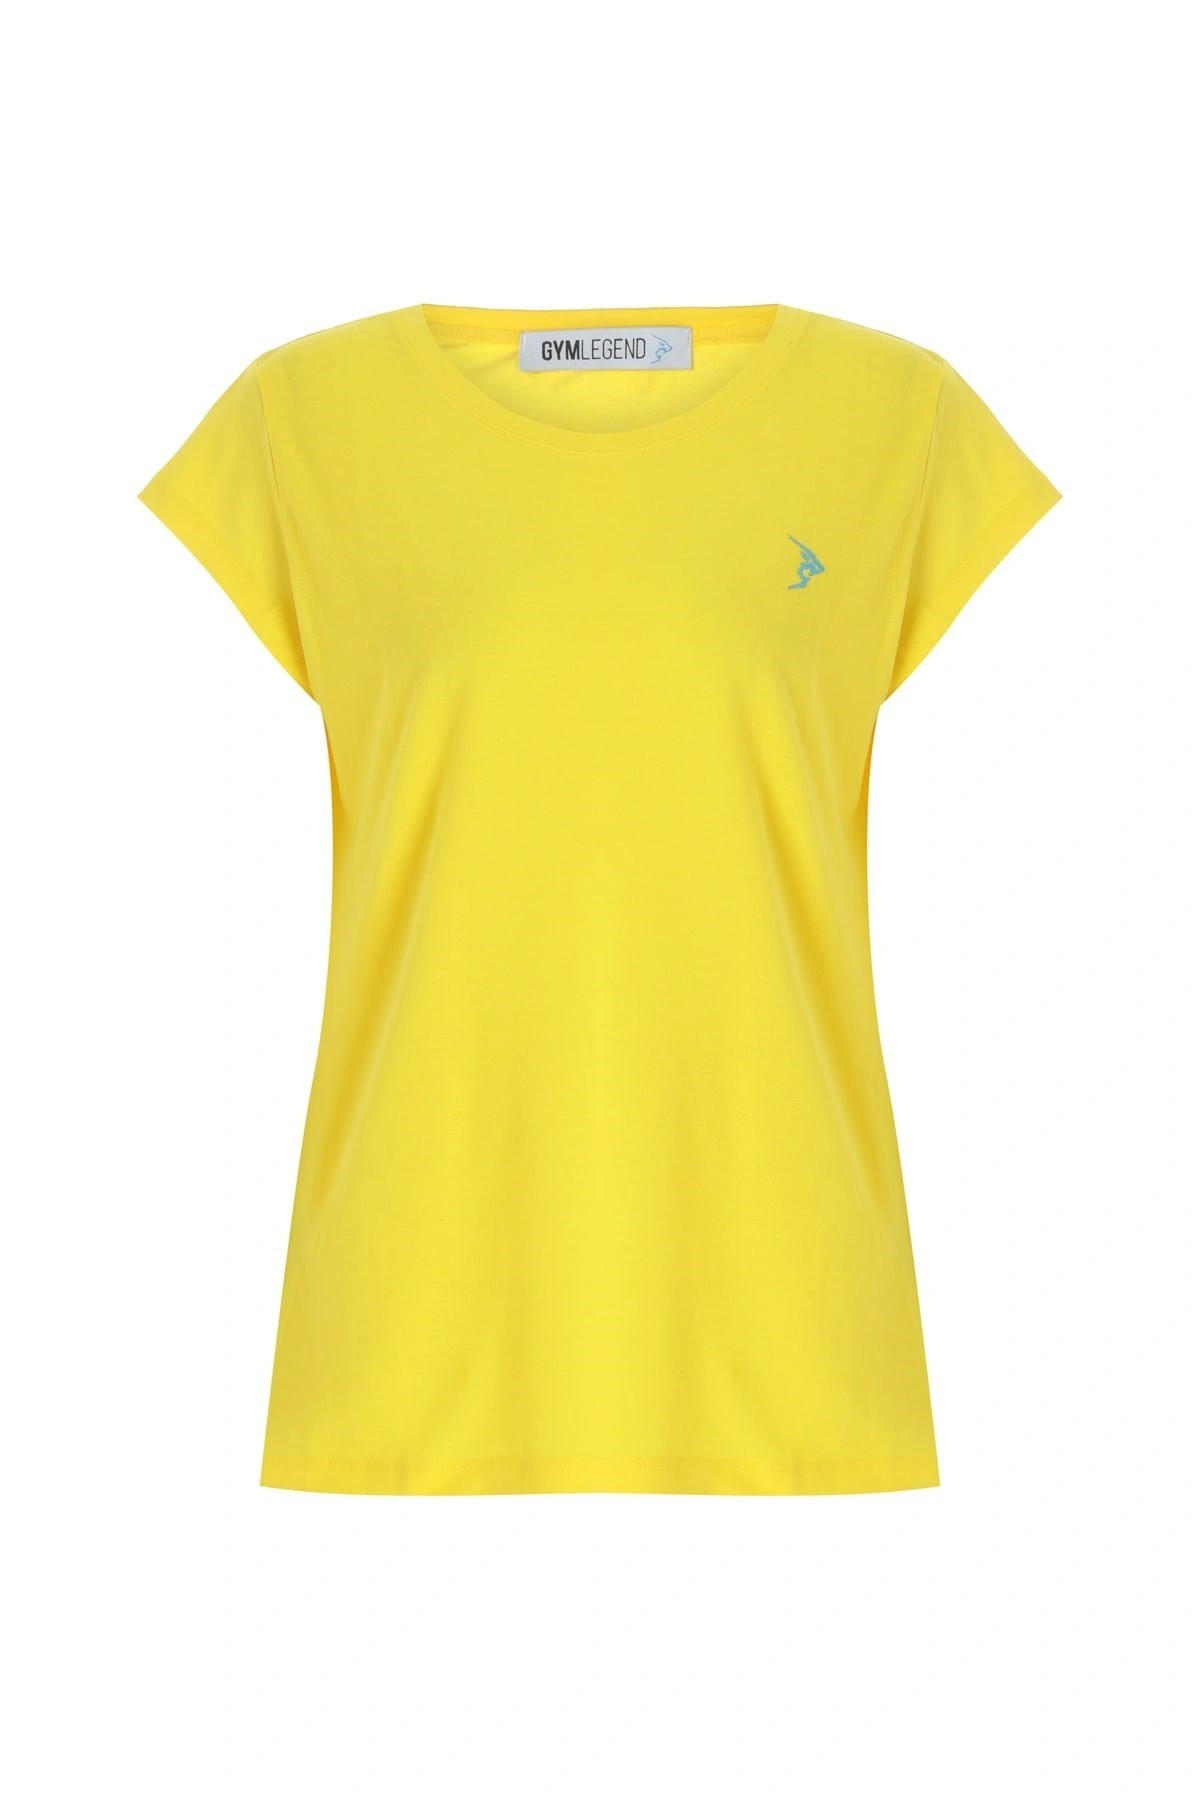 Gymlegend Kadın Sarı Pike Kısa Kollu Basic Tişört